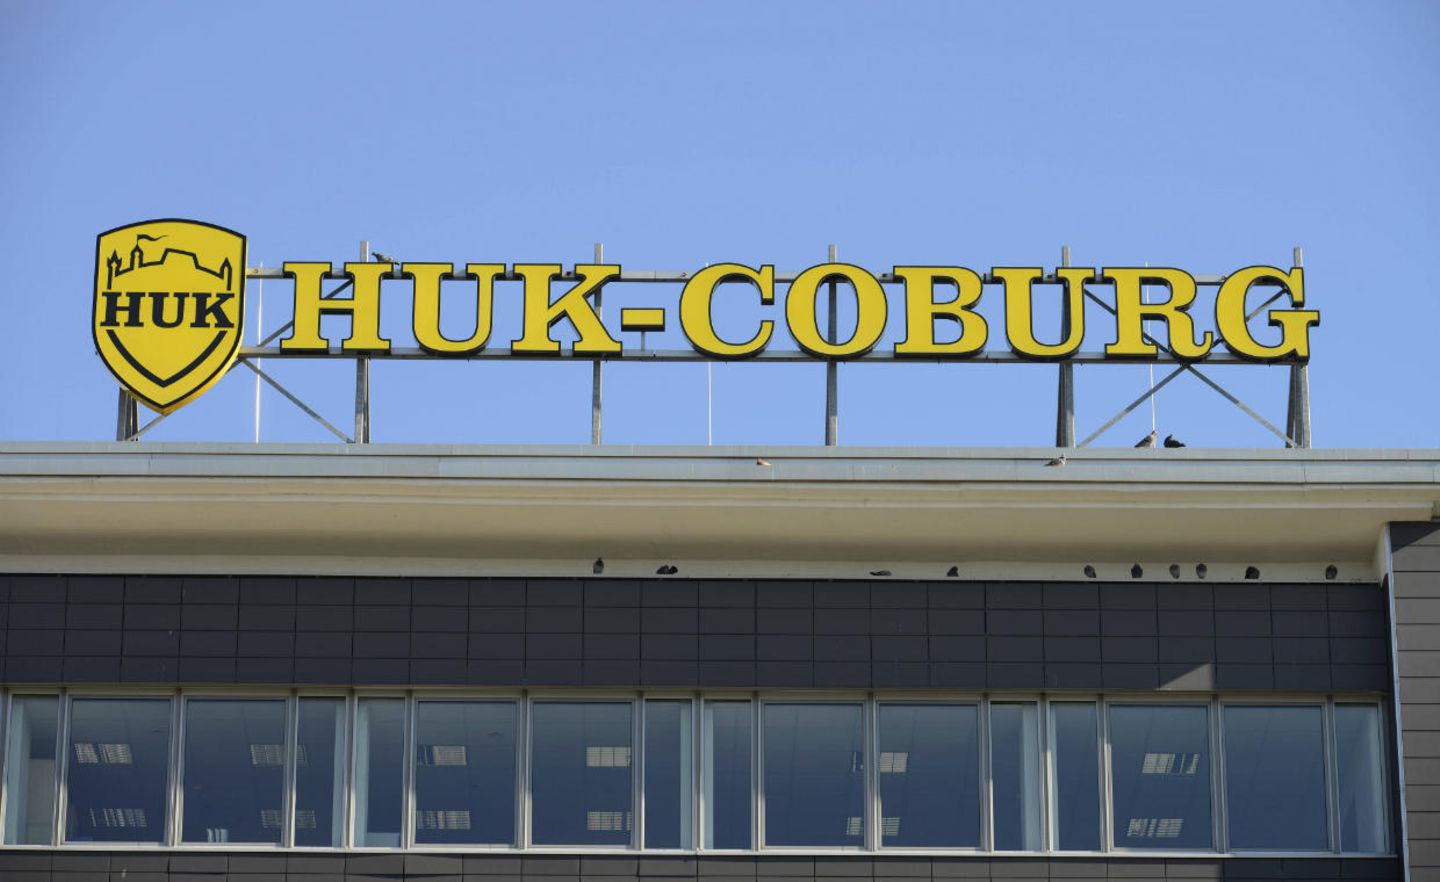 Ein großer Versicherer wie HUK-Coburg ist nicht mehr in den Vergleichsportalen zu finden